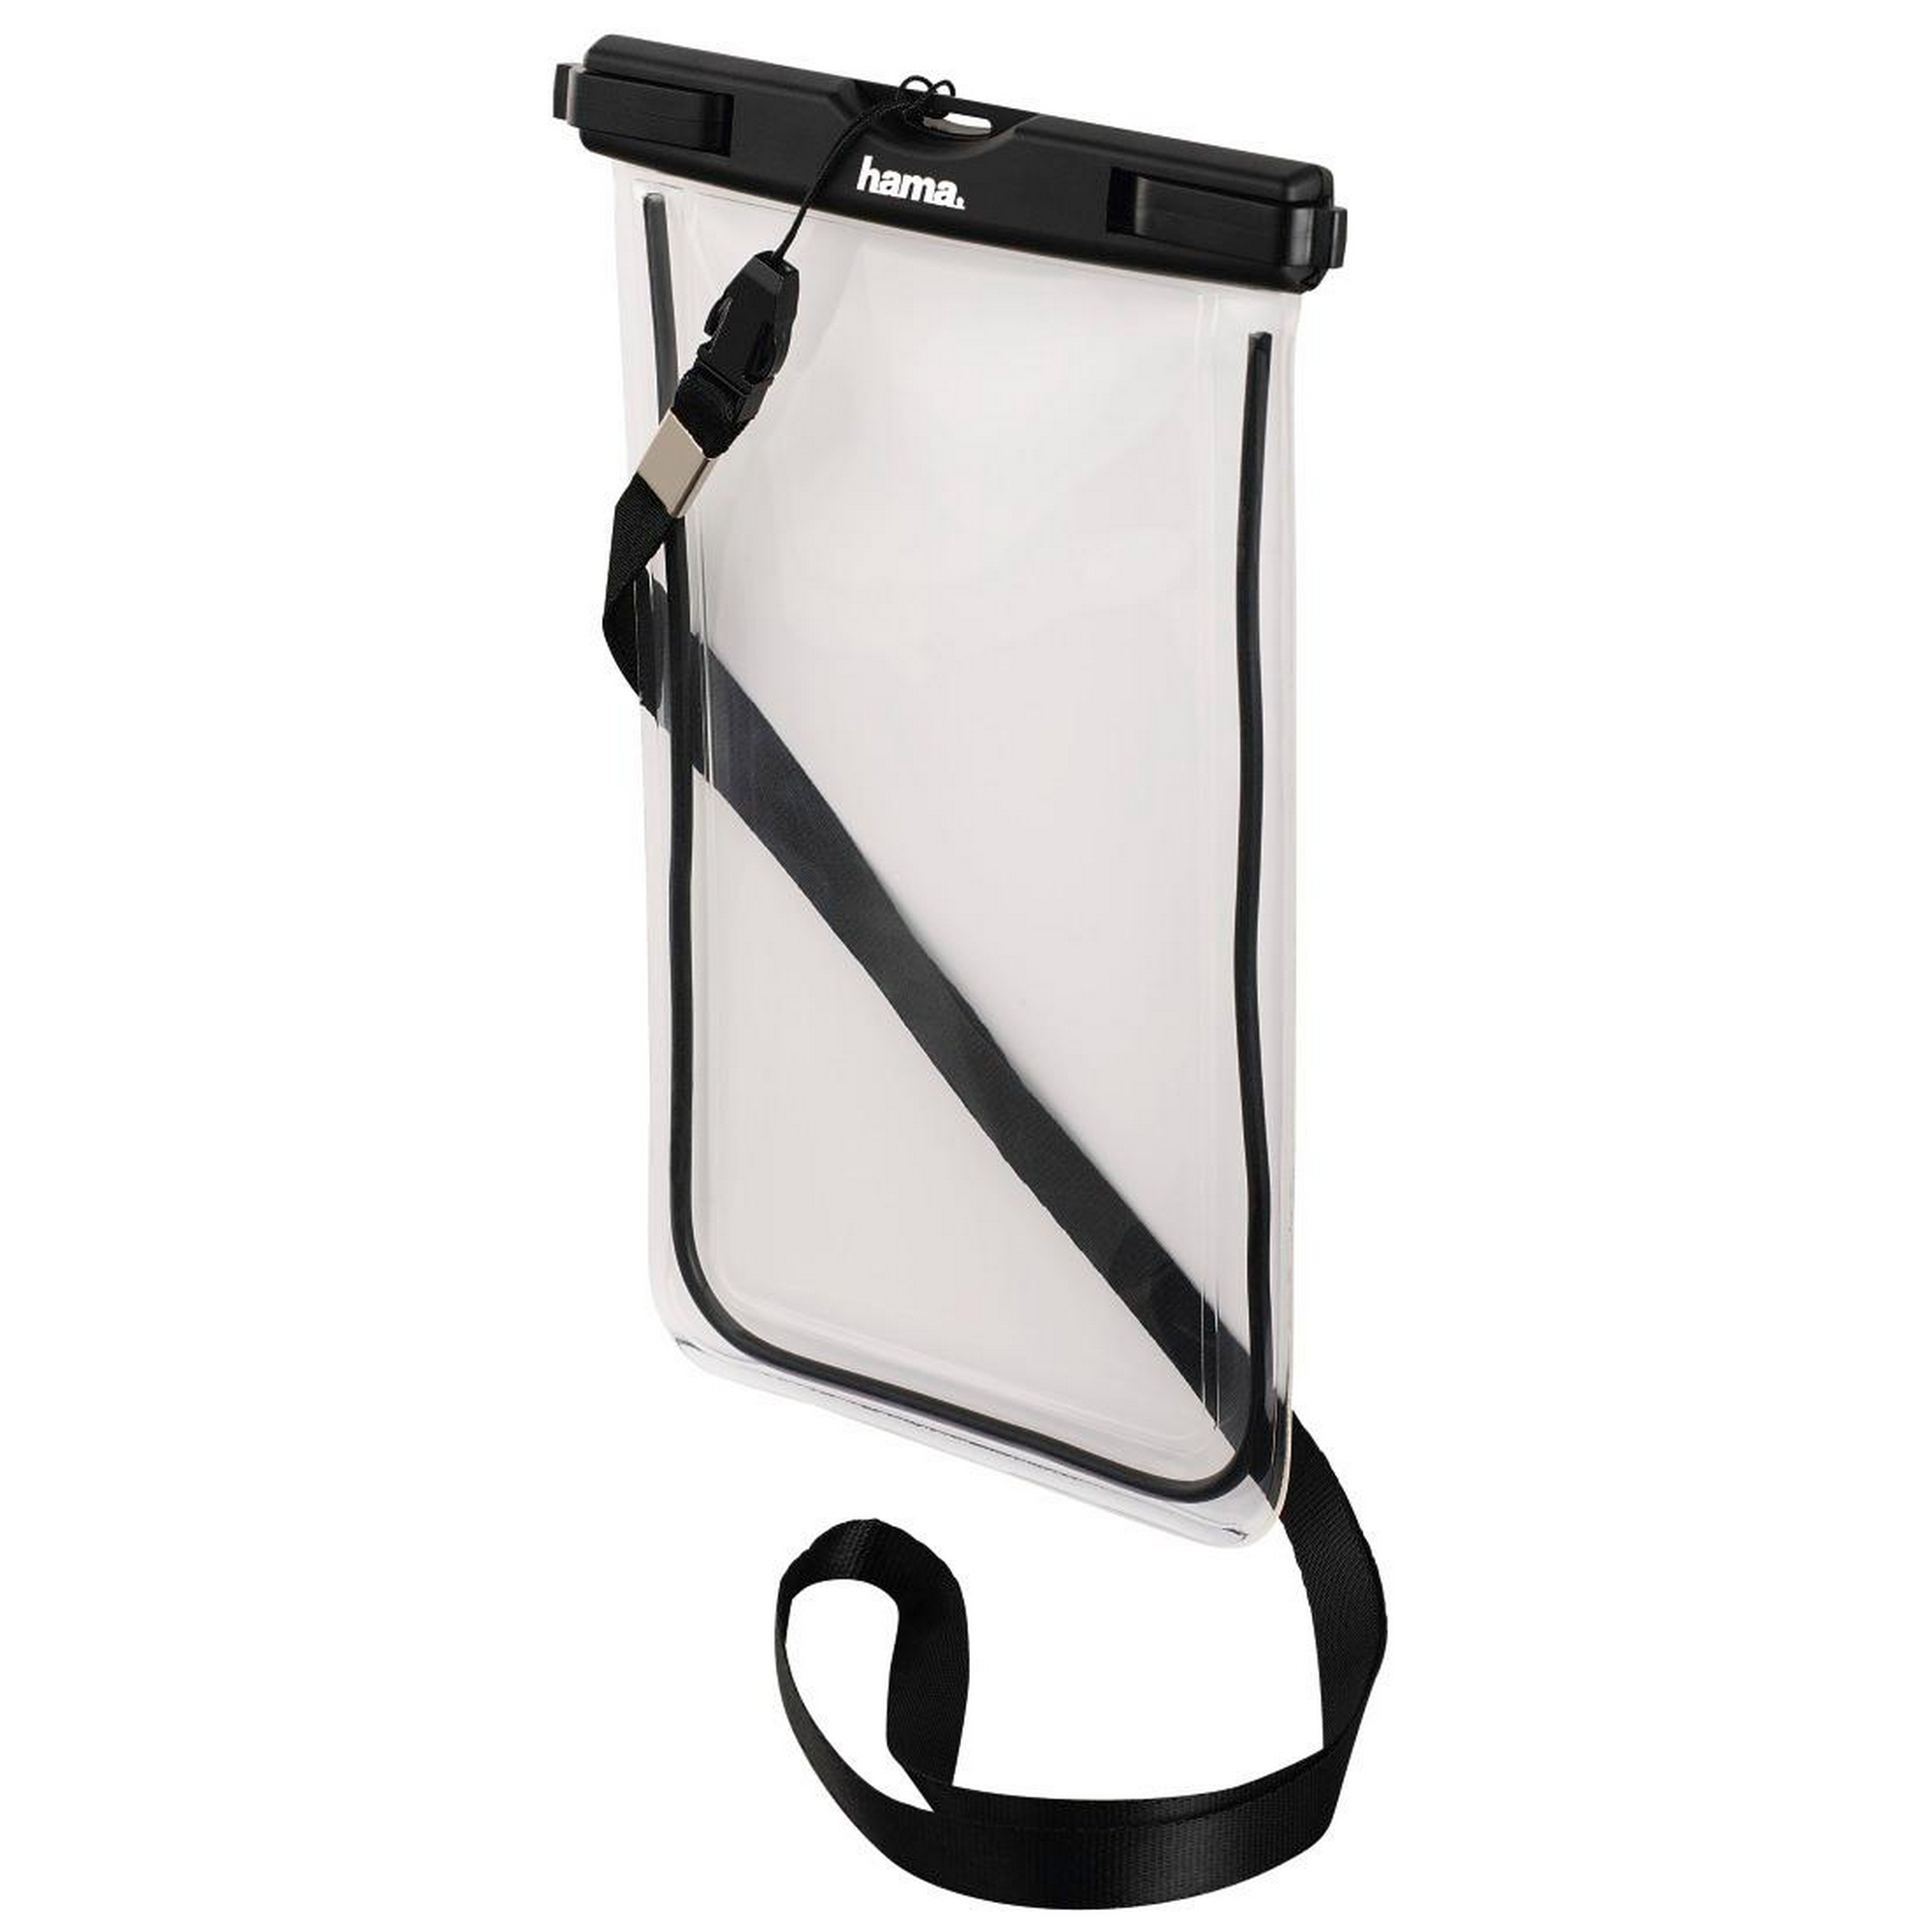 Outdoor-Tasche 'Playa' für Smartphones + product picture